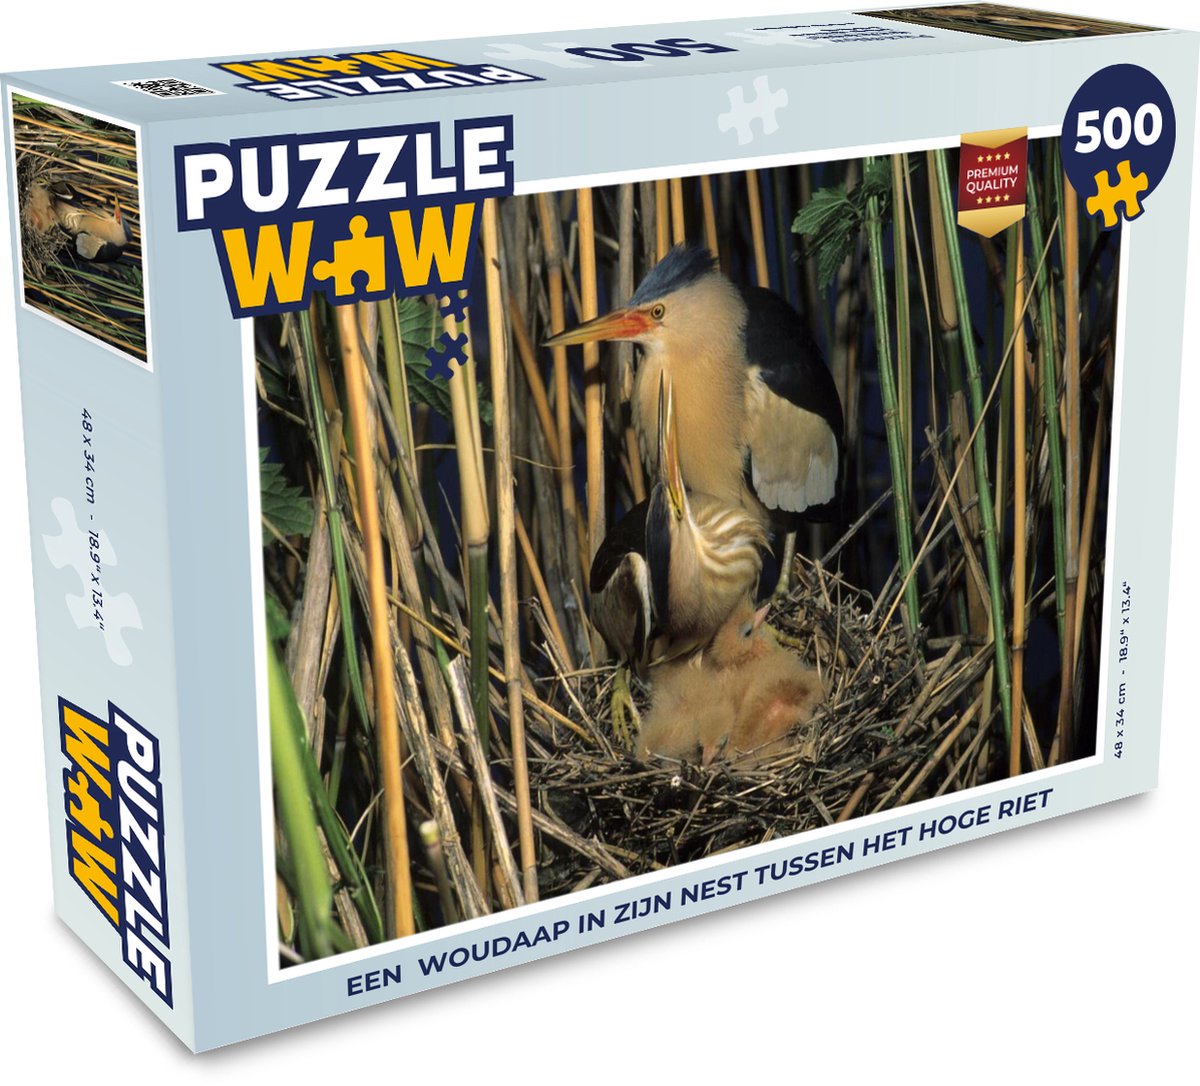 Puzzel 500 stukjes Woudaap - Een Woudaap in zijn nest tussen het hoge riet  - PuzzleWow heeft +100000 puzzels - PuzzleWow